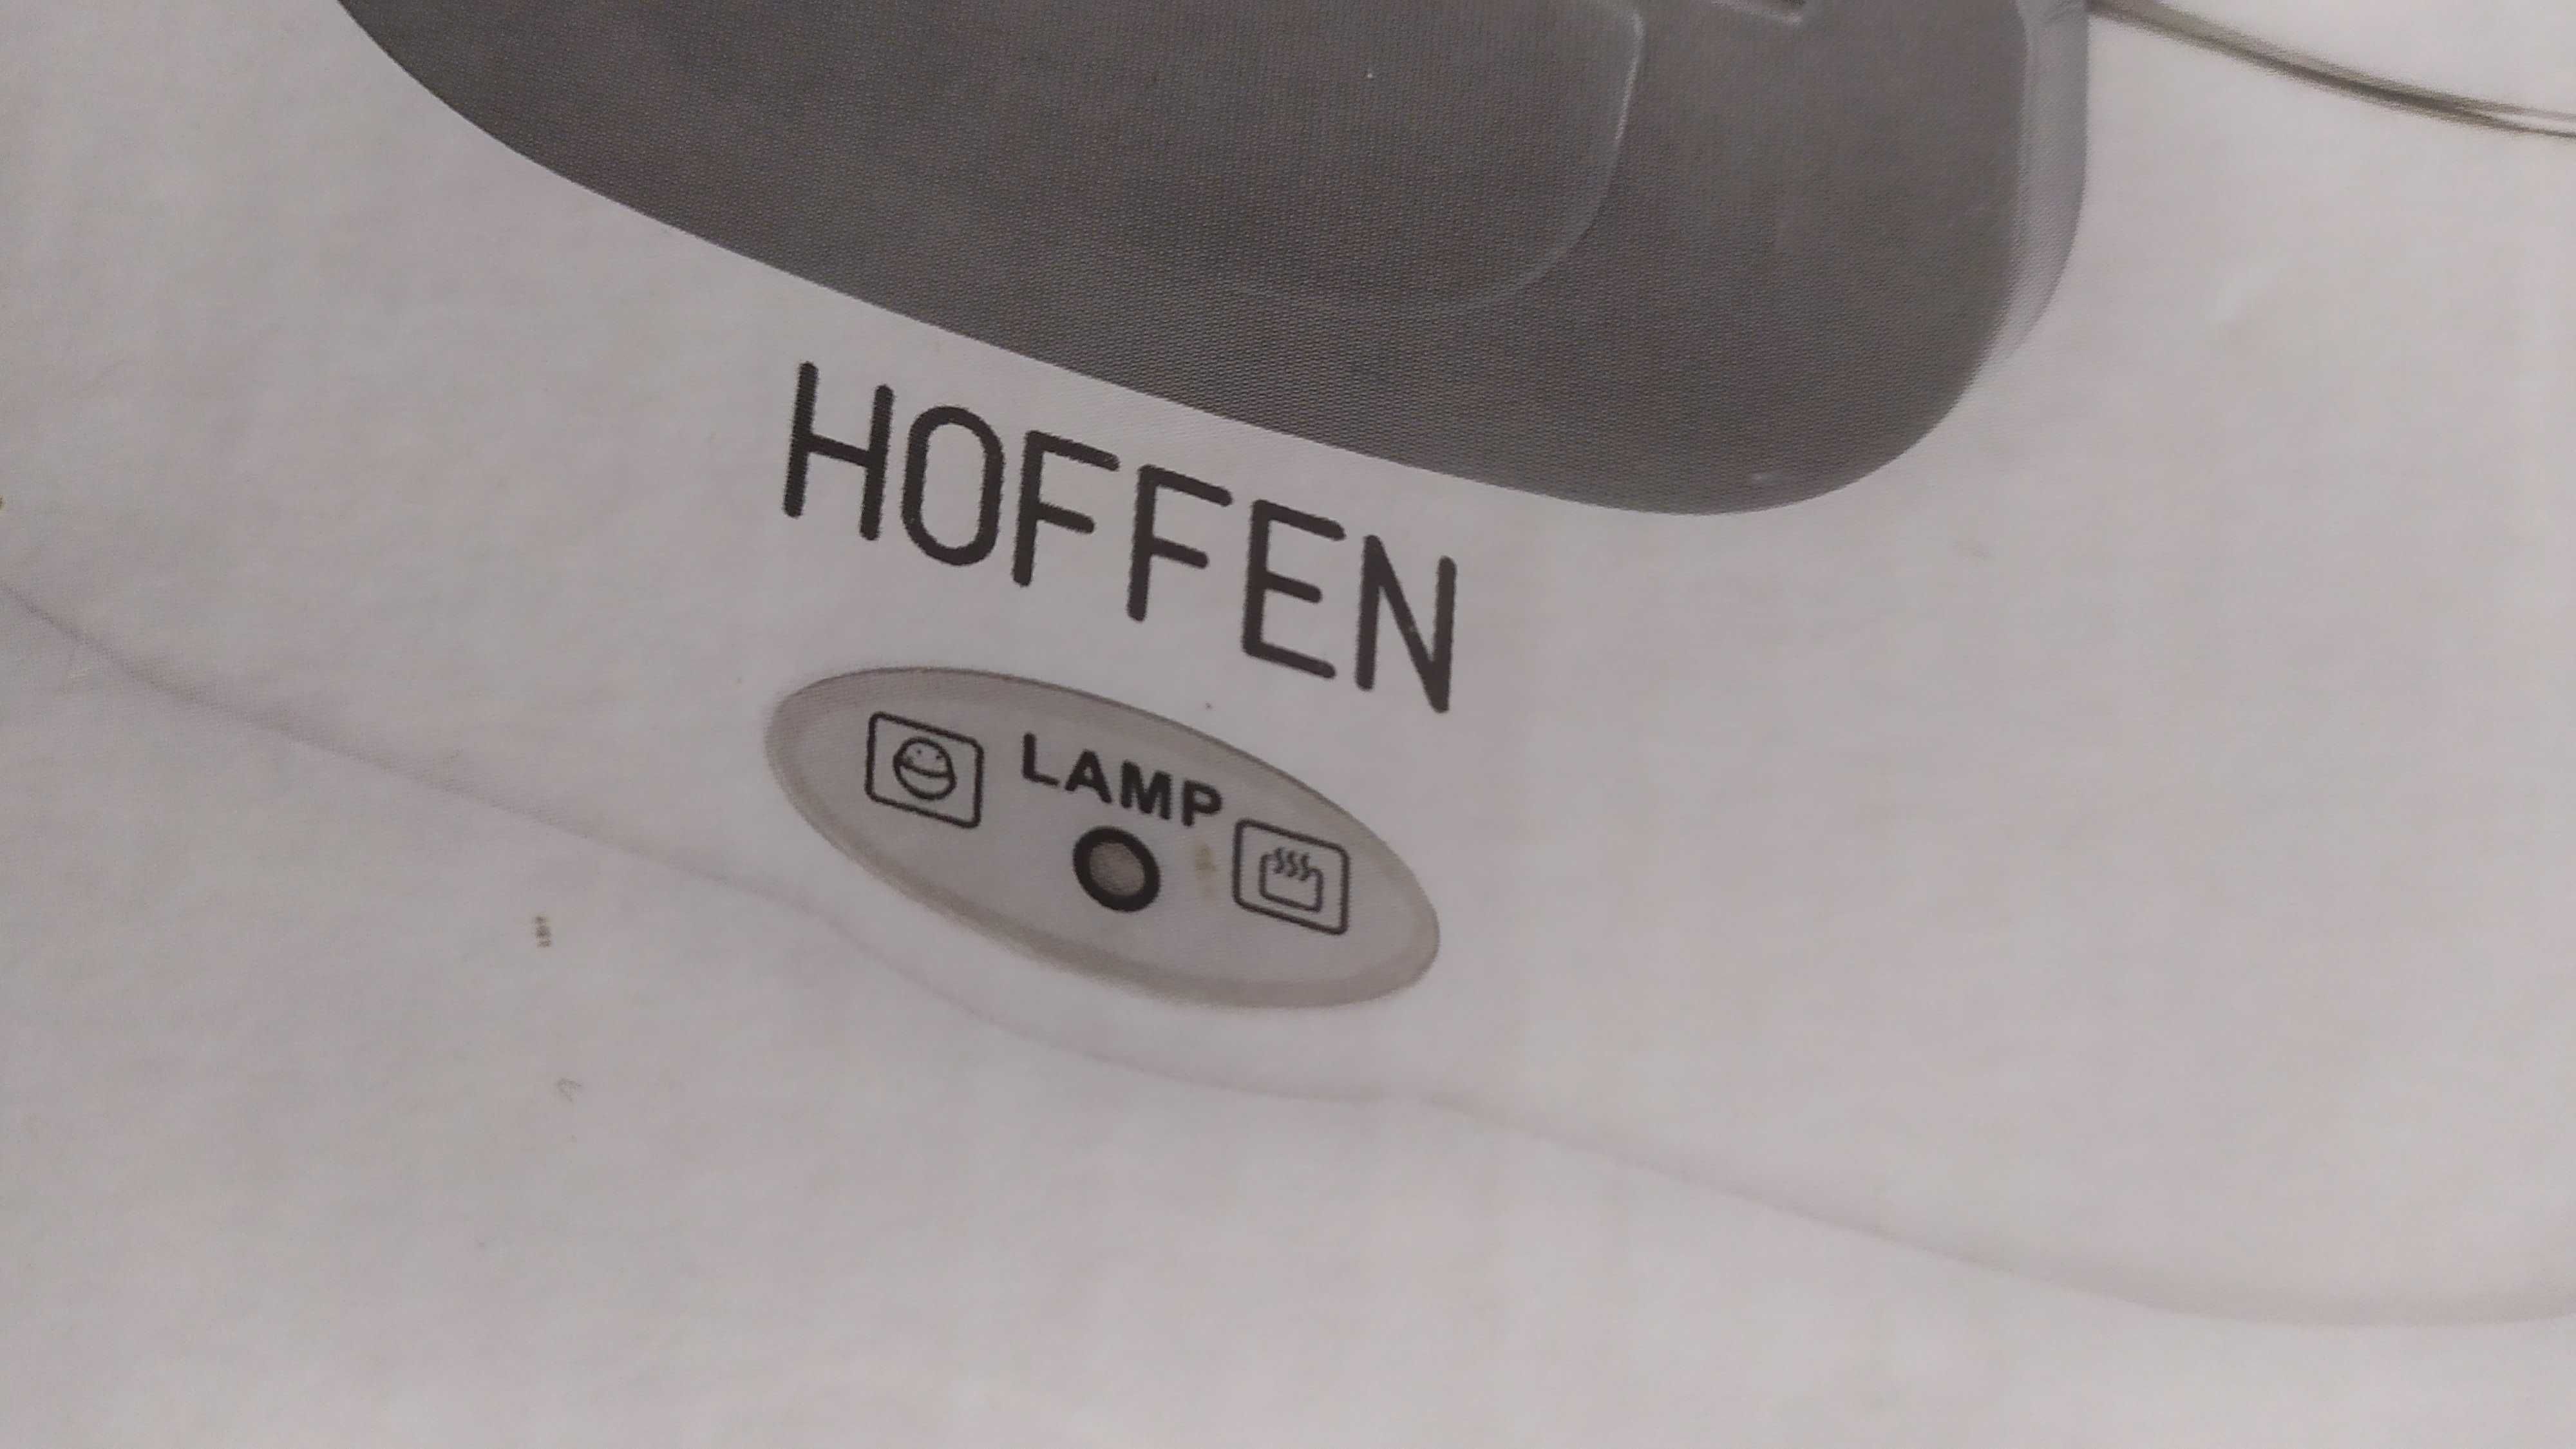 Lunchbox Hoffen nowy elektryczny zapakowany w kartonie,